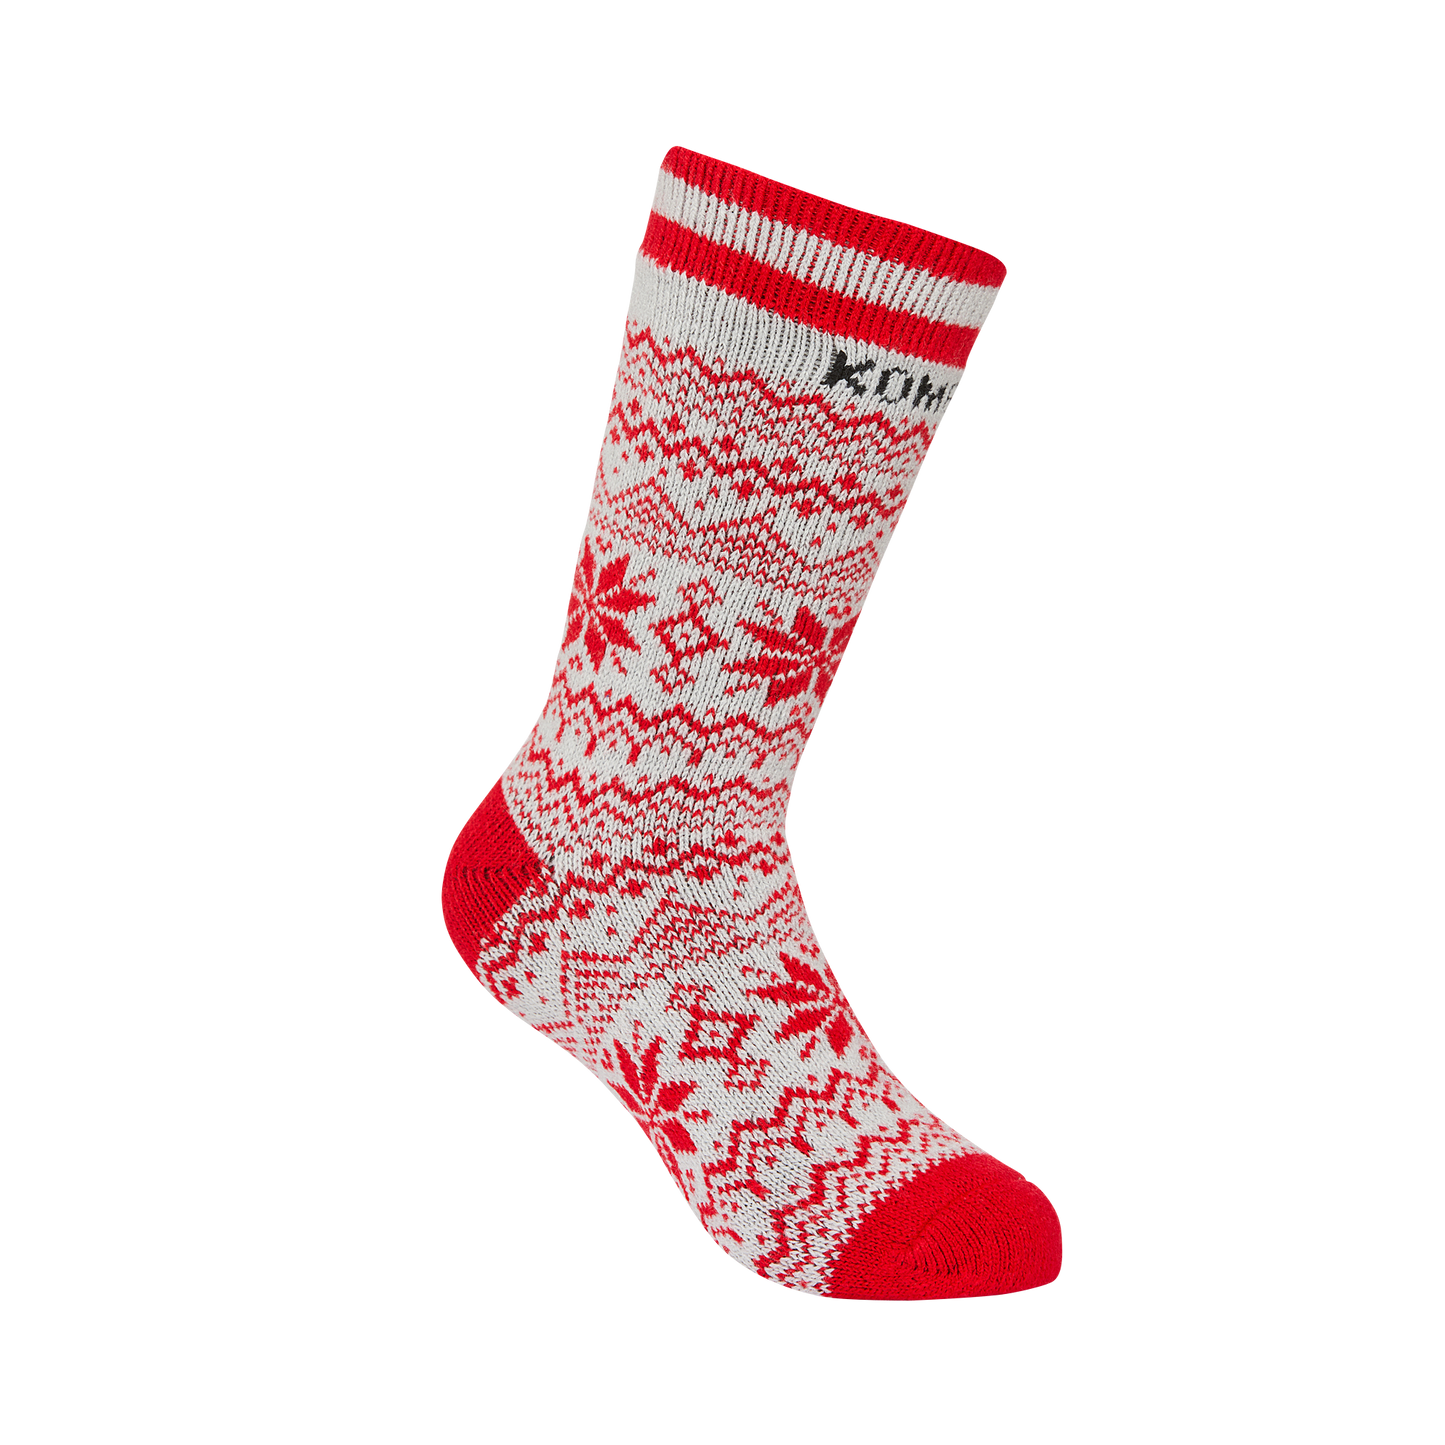 Kombi Cabin Socks - Maple Leaf Red (Final Sale)